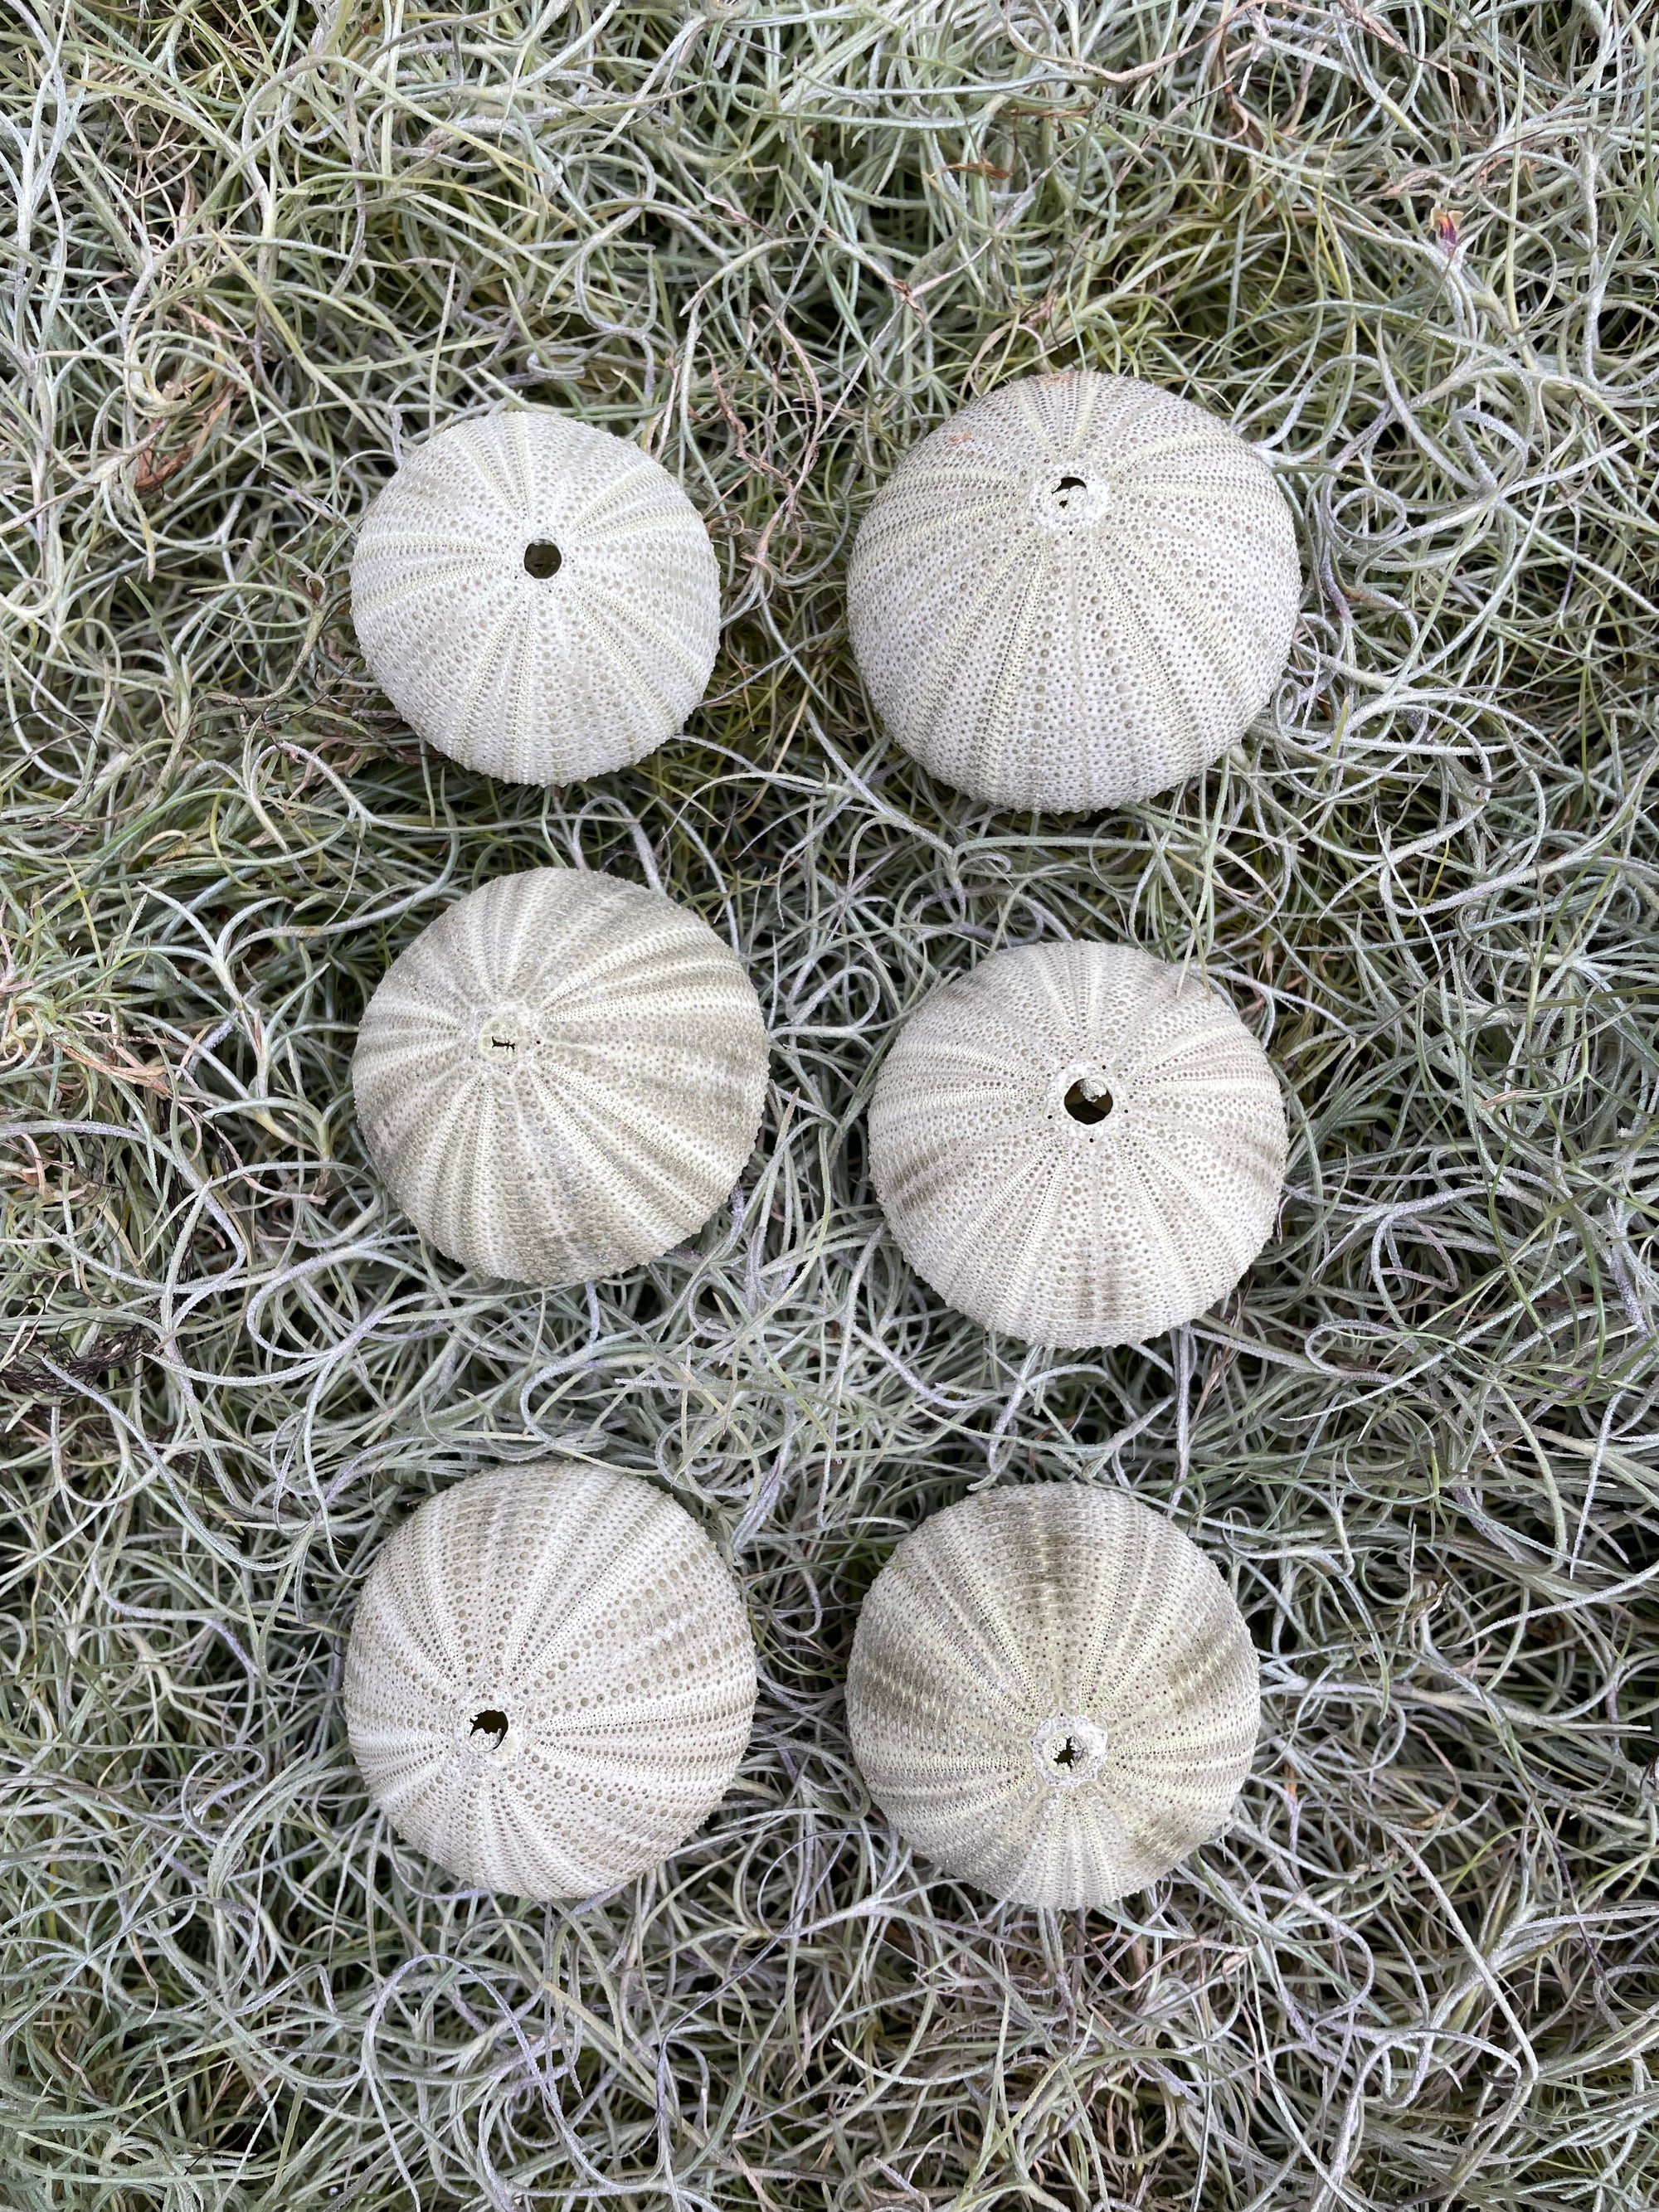 Green Ball Sea Urchin